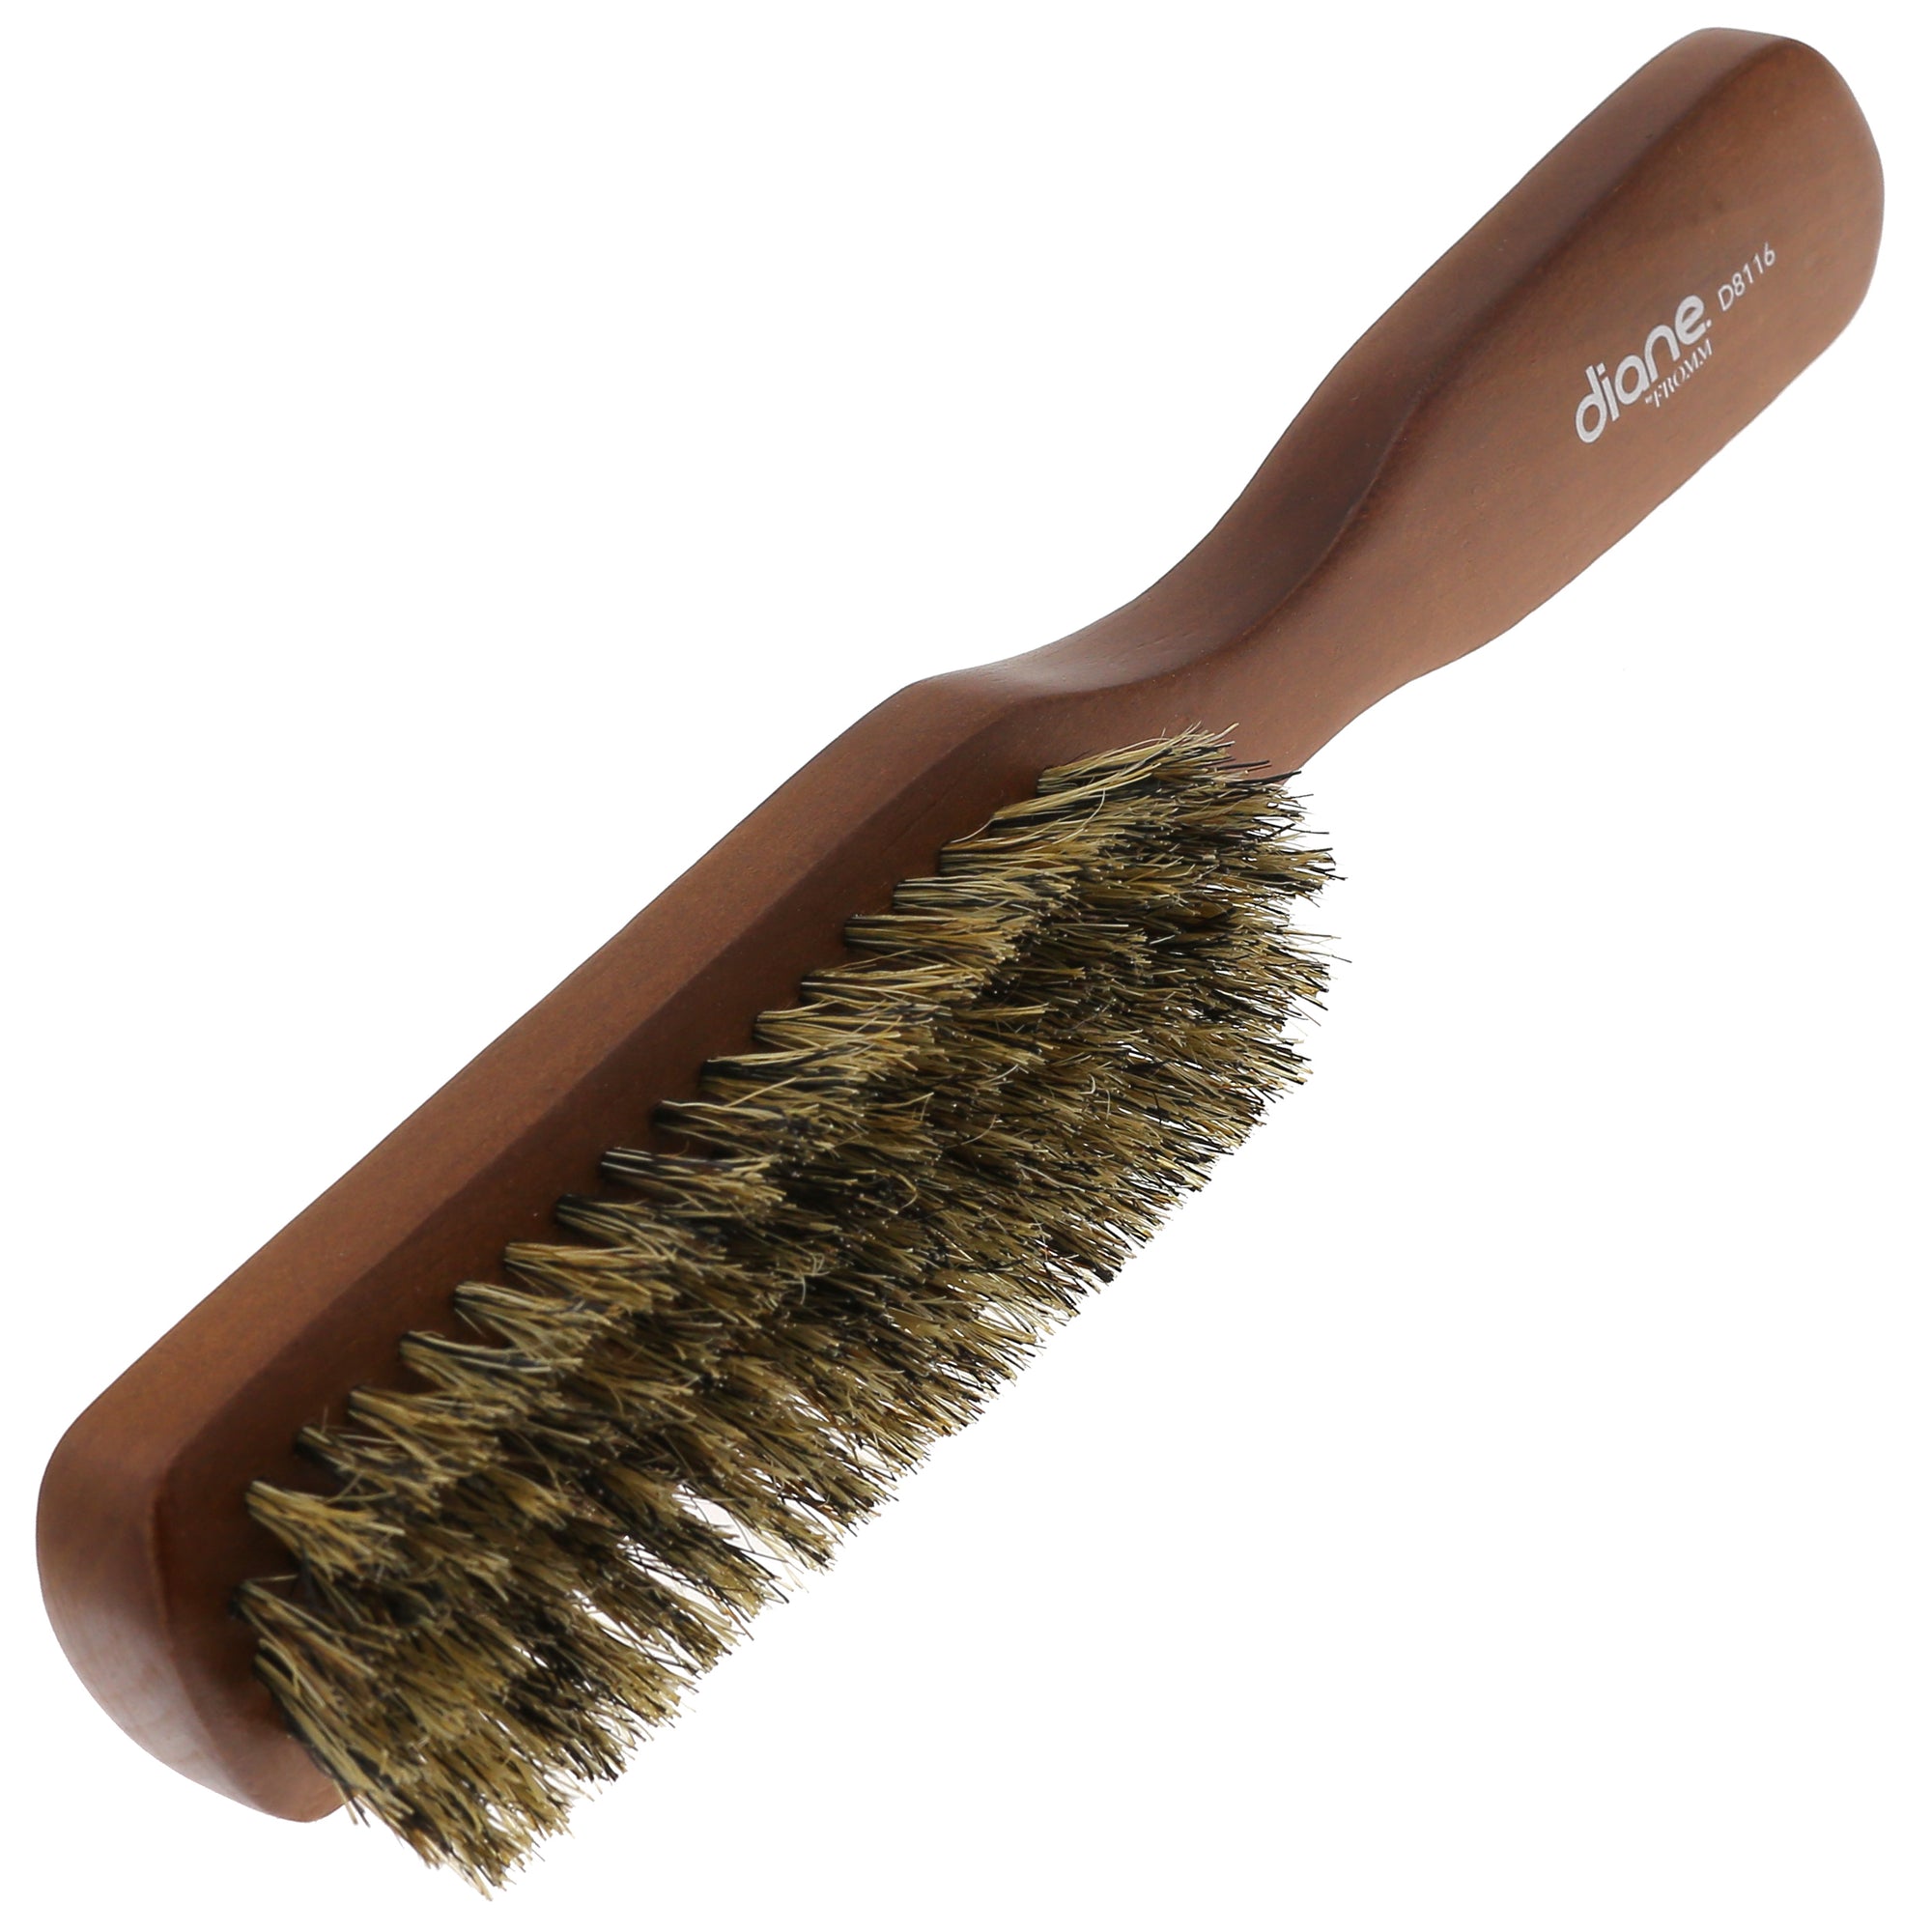 Boar Bristle Wooden Grooming Hair Brush